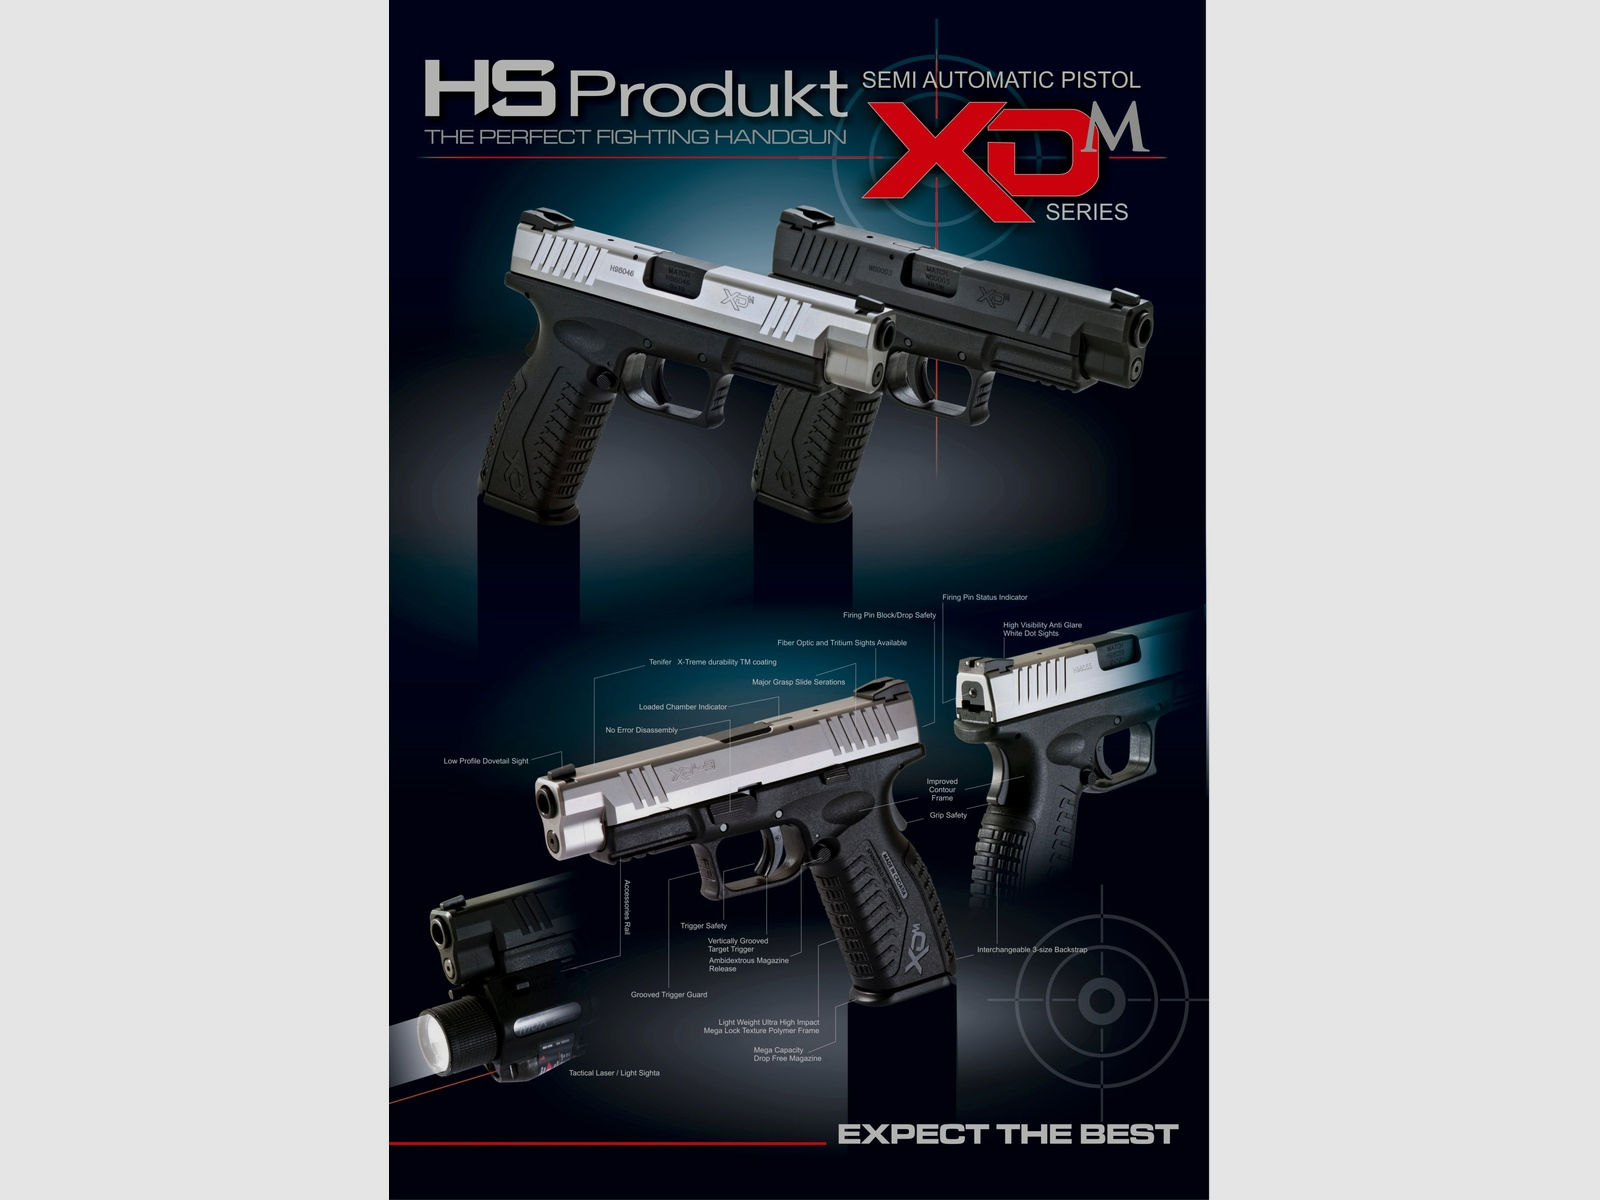 HS Produkt	 XDM-9 4.5 cal 9X19